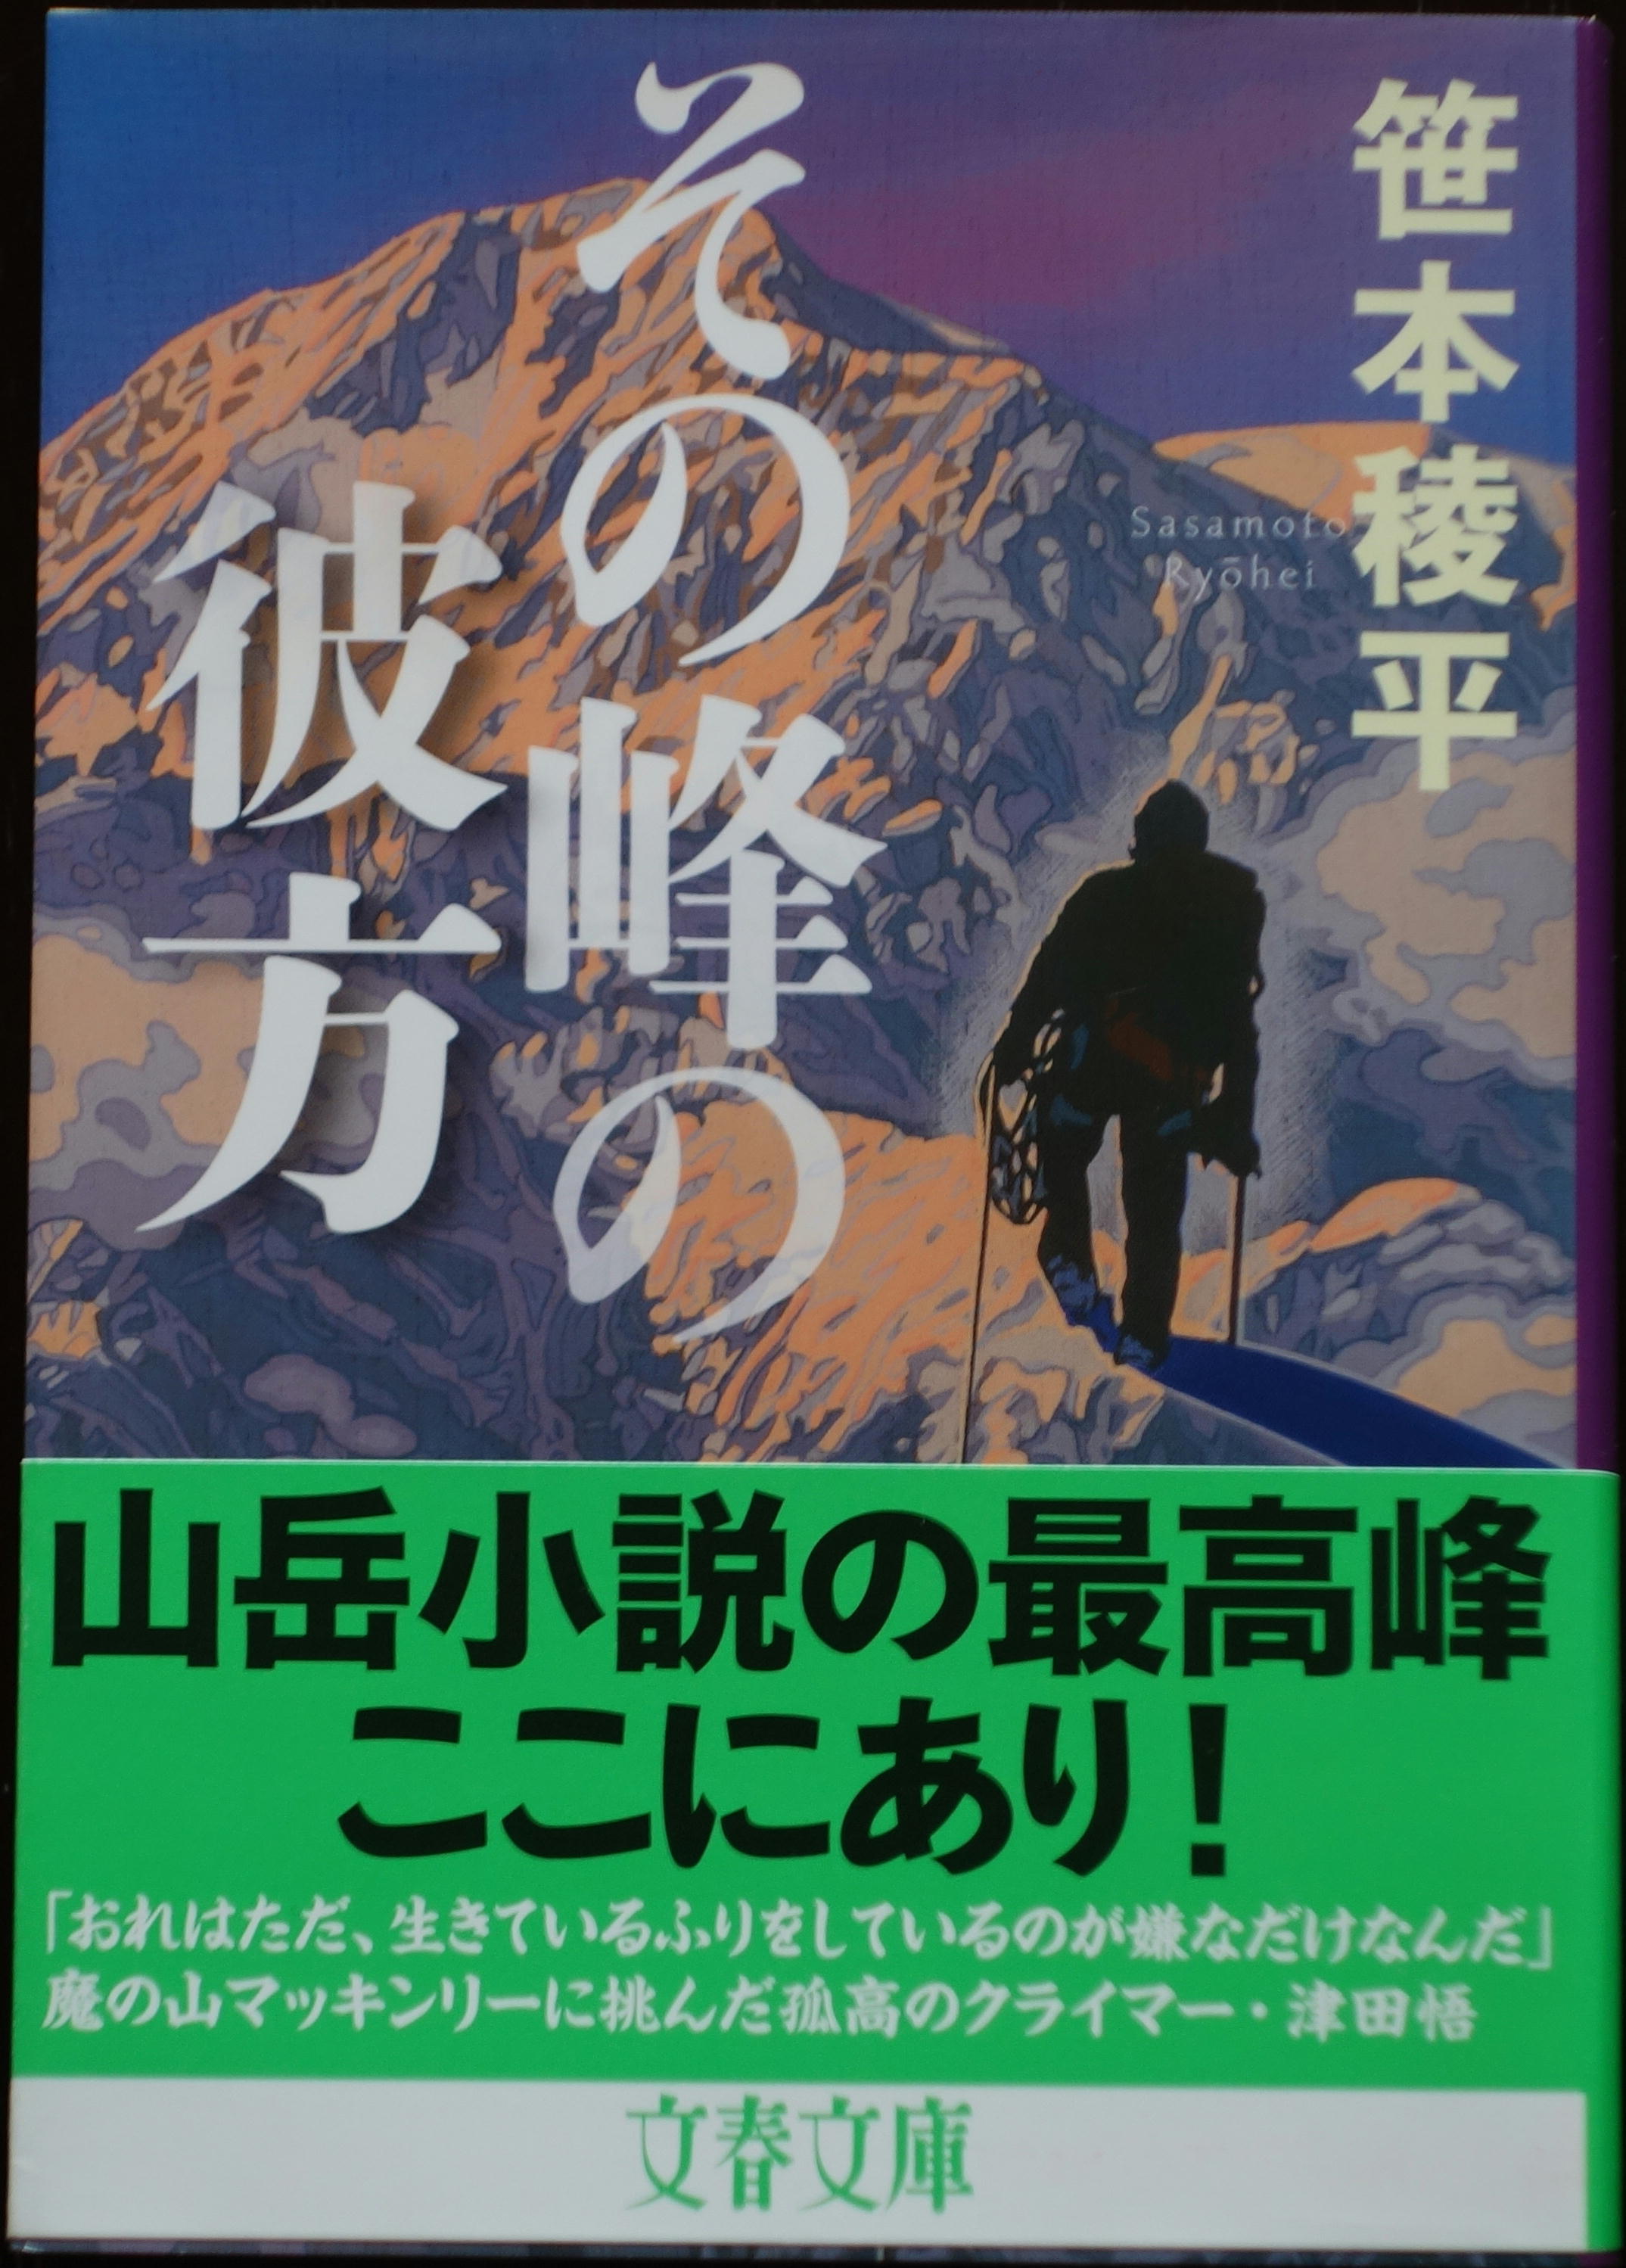 しょうすけのシニアな日々 笹本稜平氏の山岳小説を読んで